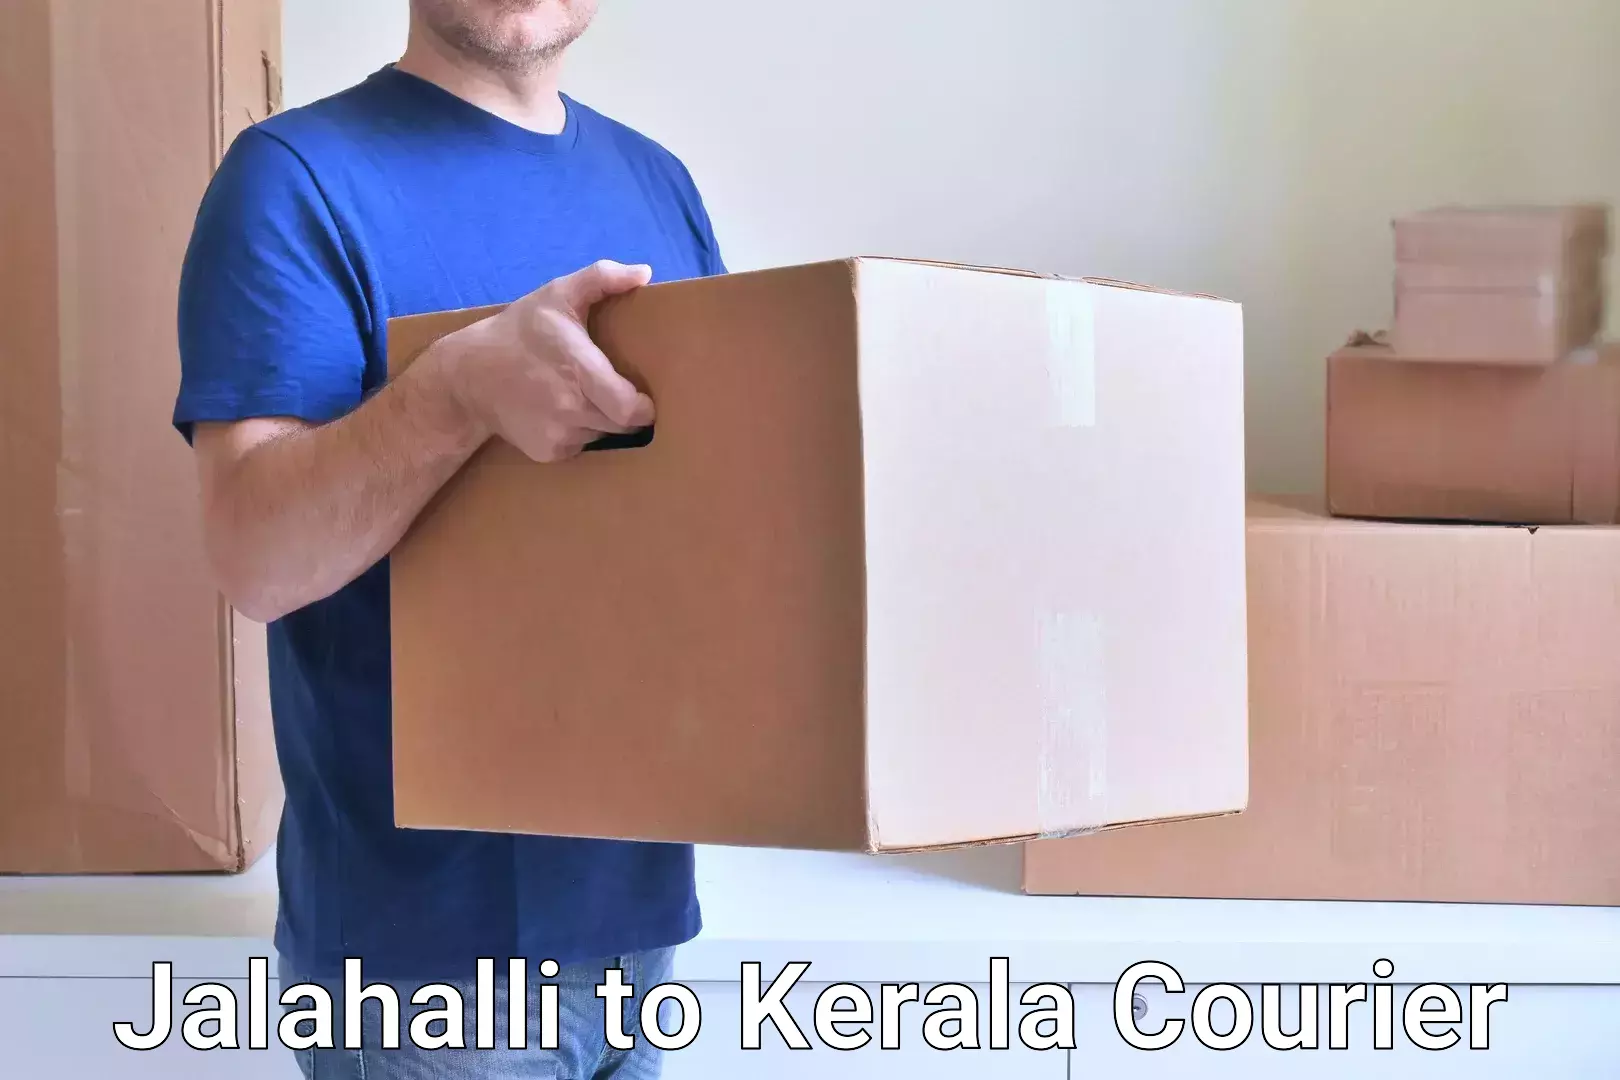 Affordable parcel service Jalahalli to Ponekkara